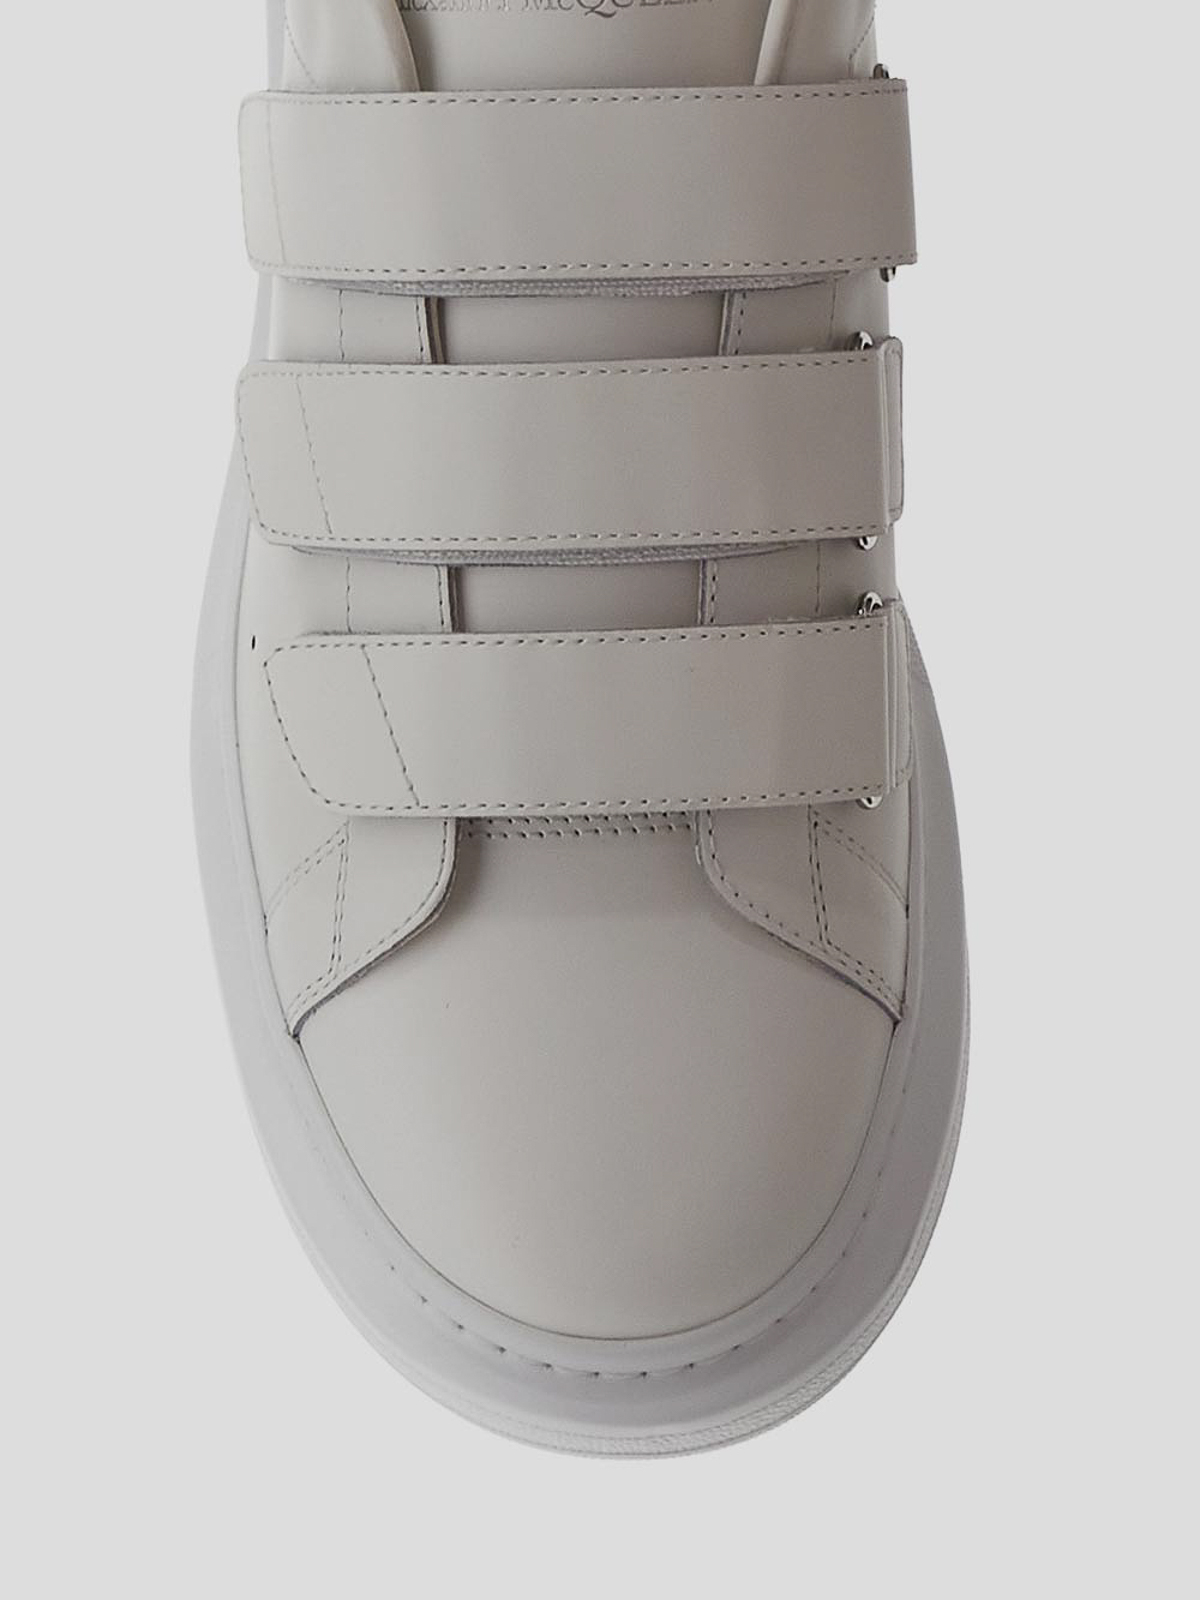 Alexander McQueen | Shoes | Alexander Mcqueen Velcro Sneakers New In Box |  Poshmark